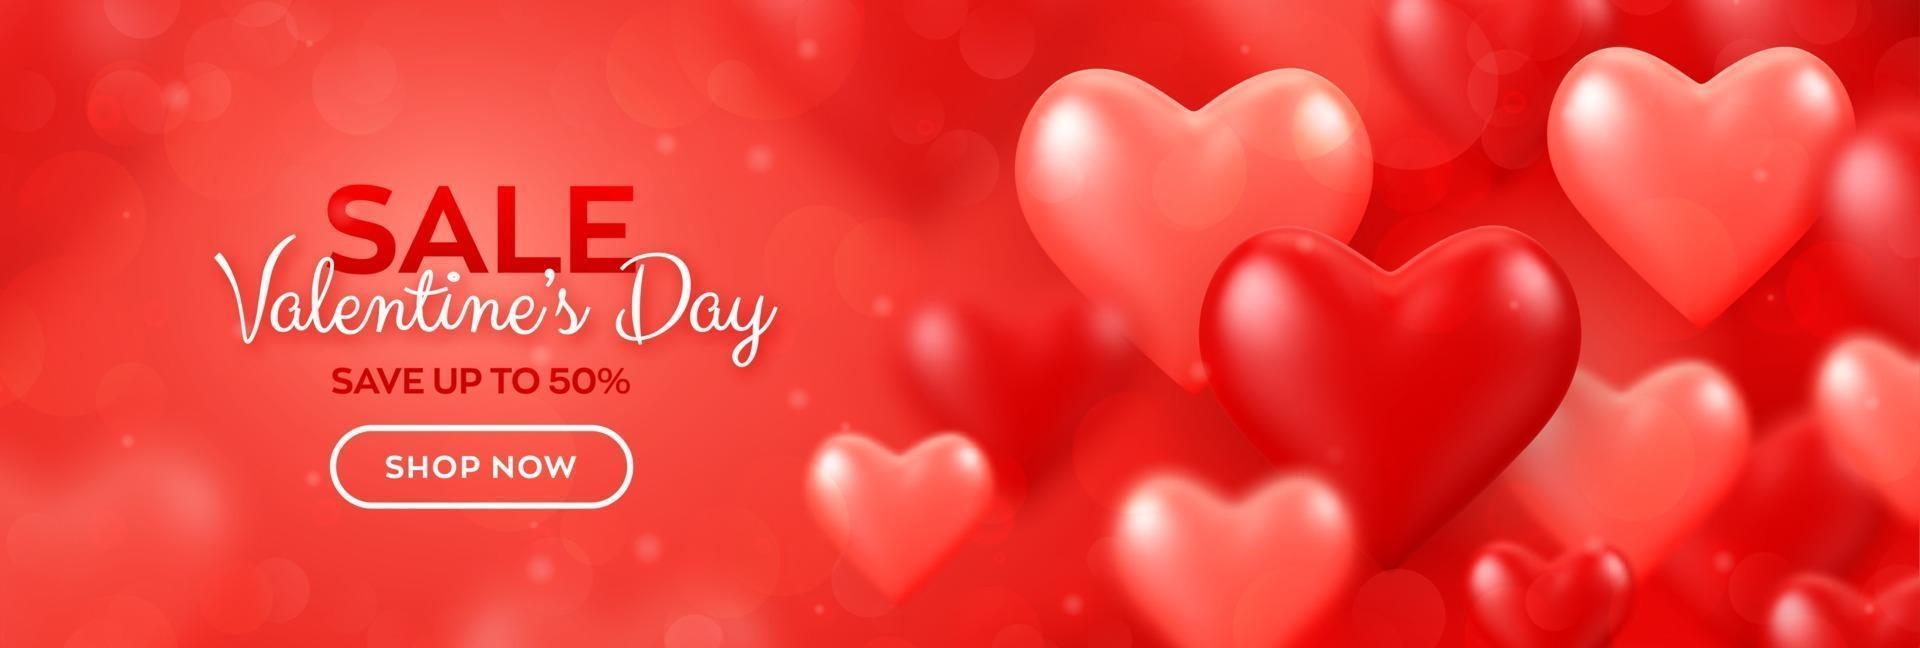 fijne Valentijnsdag. Valentijnsdag verkoop banner met rode en roze ballonnen 3d harten achtergrond. behang, flyer, uitnodiging, poster, brochure, wenskaart. vector